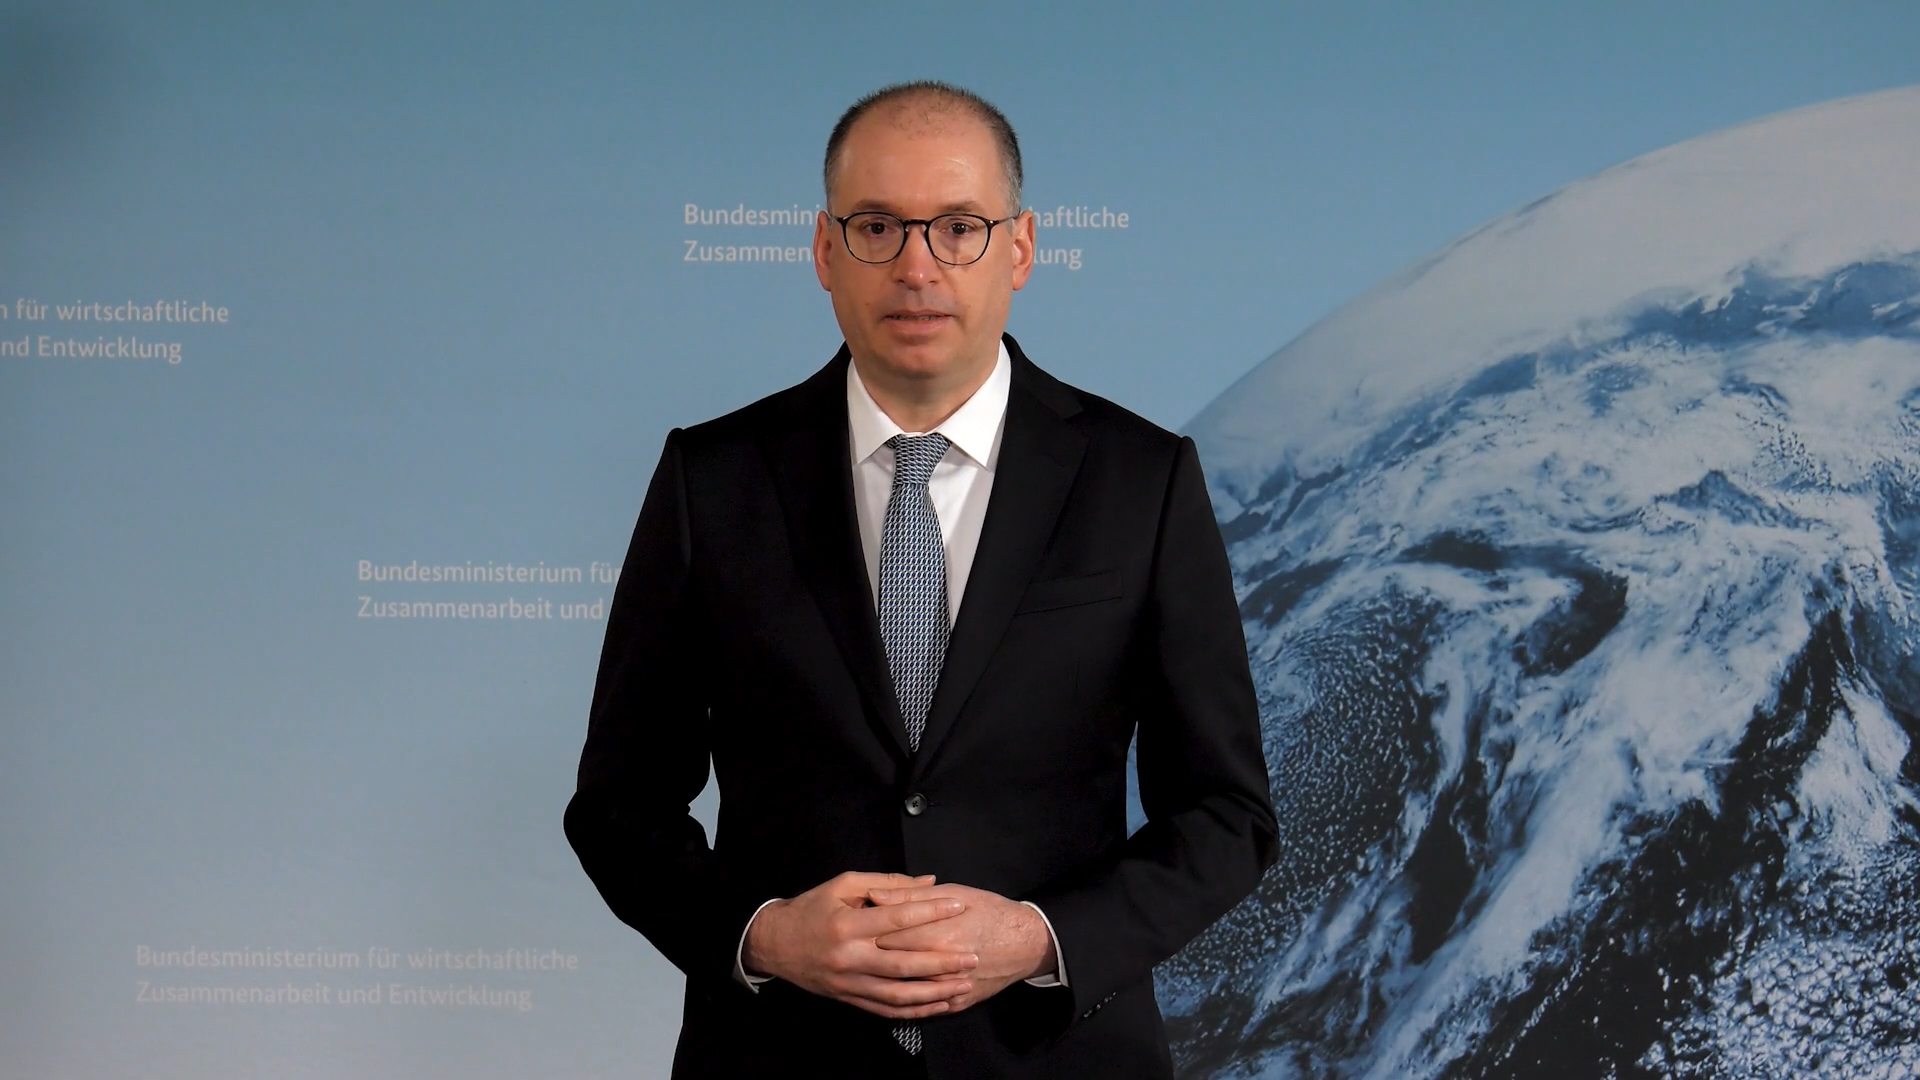 Standbild aus dem Video "3 Fragen an den Parla­men­ta­rischen Staats­sekre­tär Niels Annen"